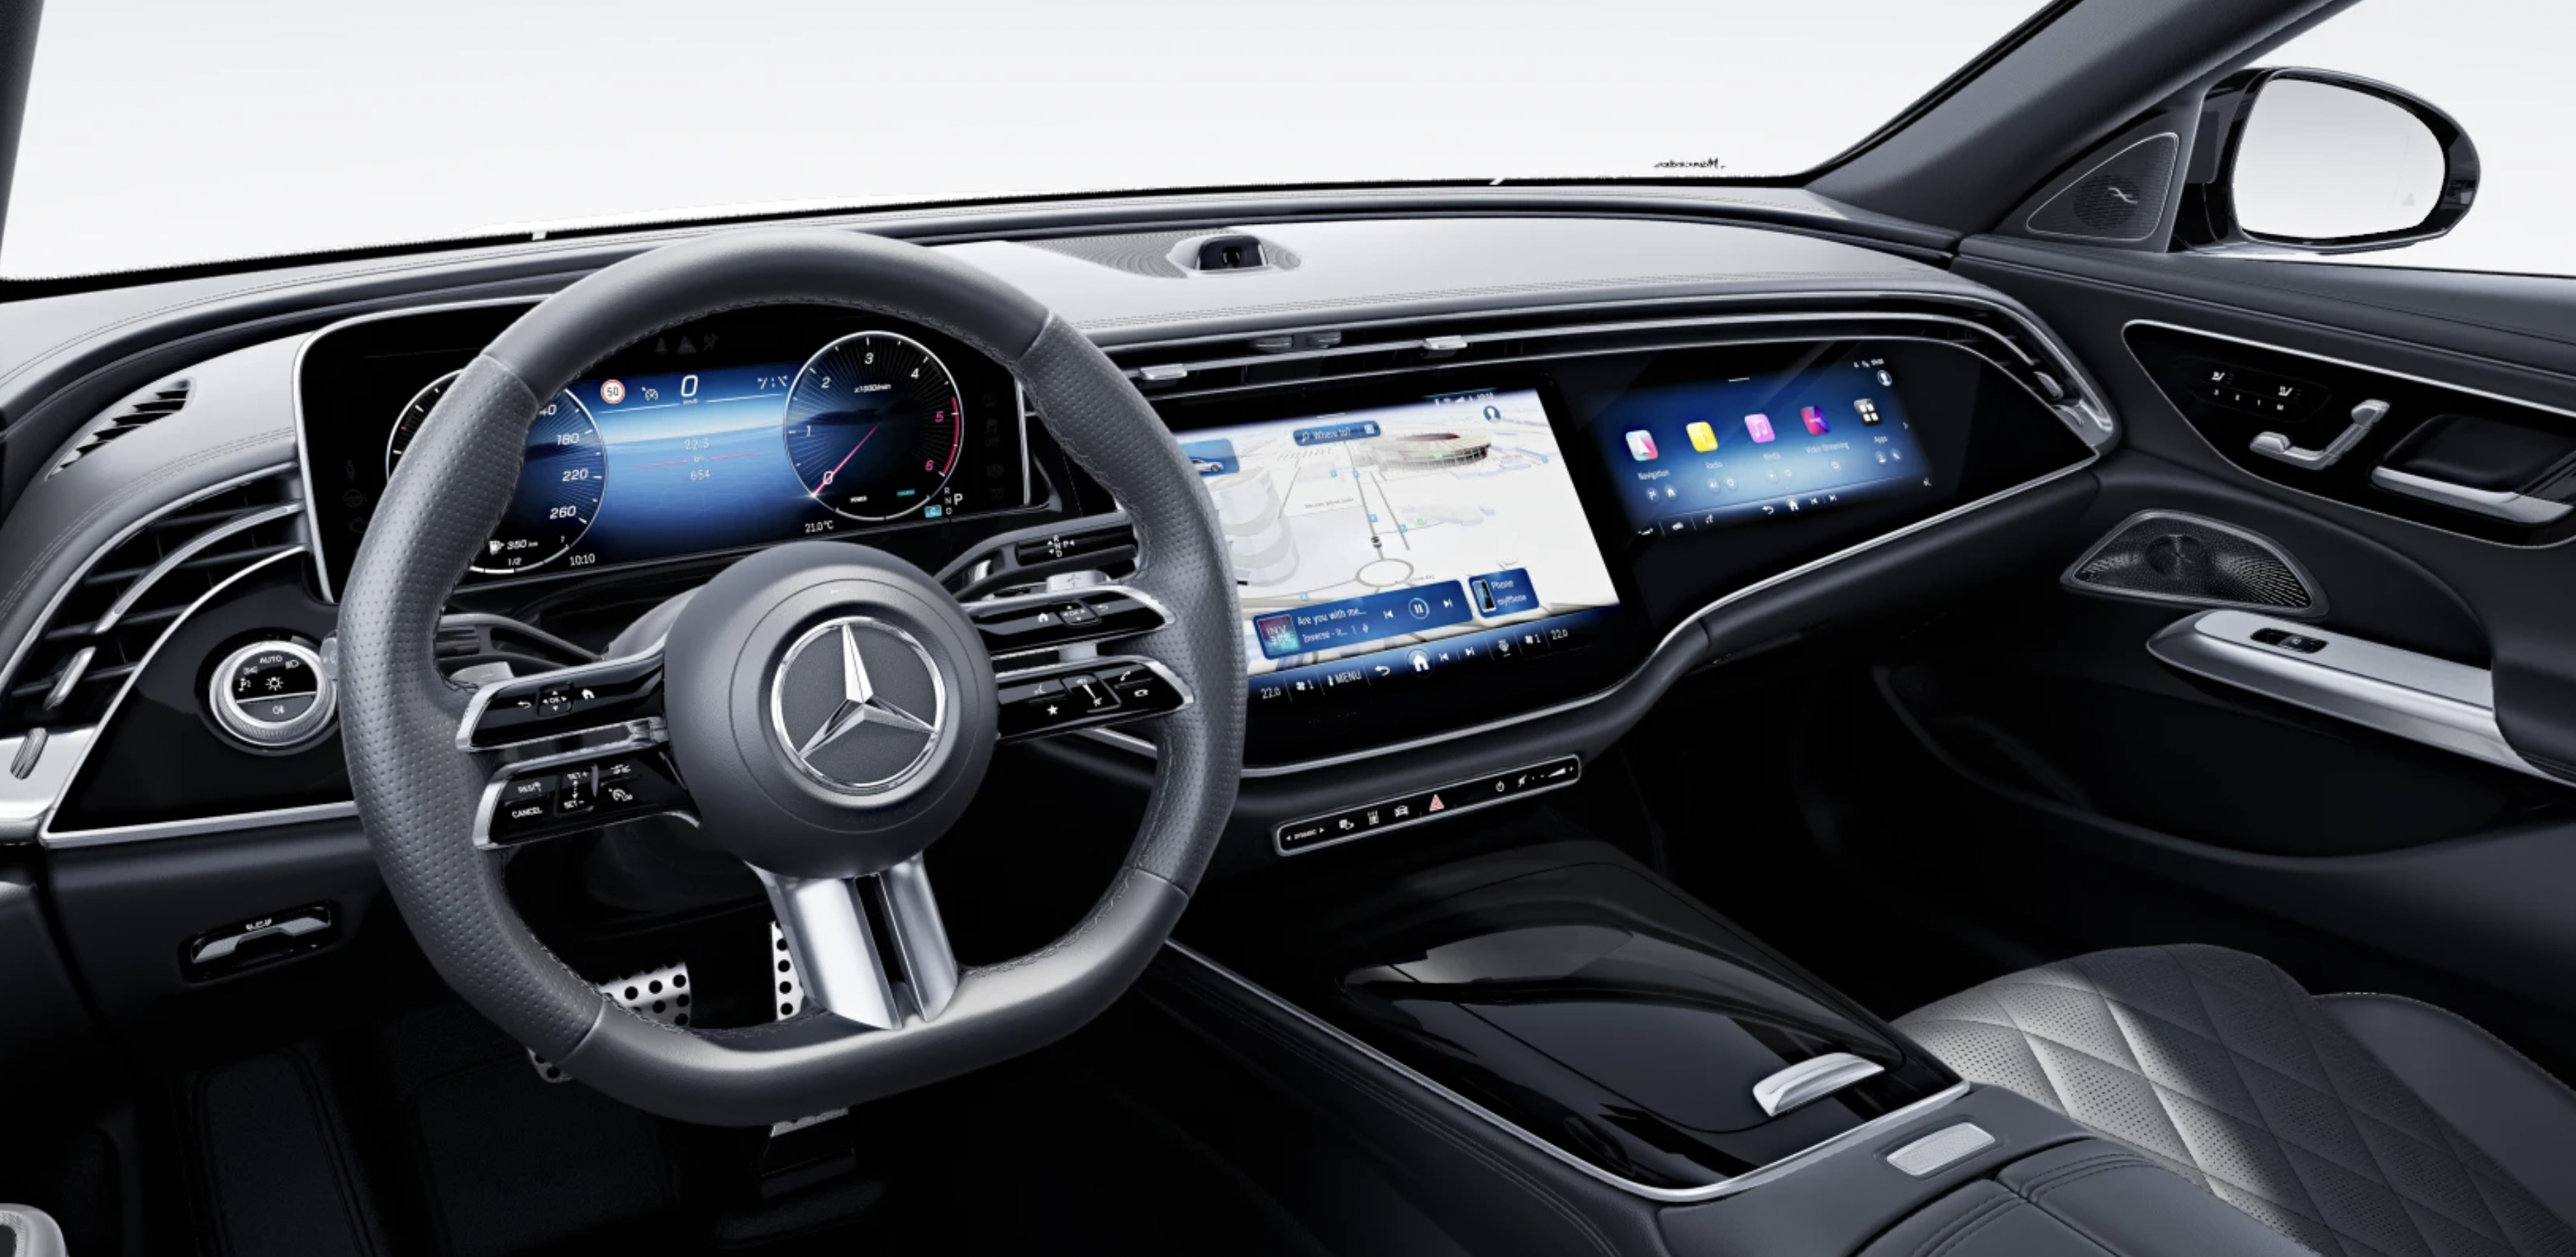 Mercedes E sedan 220d 4matic 9G-tronic AMG | nový model | byznys naftový sedan | nové auto ve výrobě | luxusní digitální interiér | nejmodernější technologie | maximální výbava | nové auto ve výrobě | nákup online | AUTO